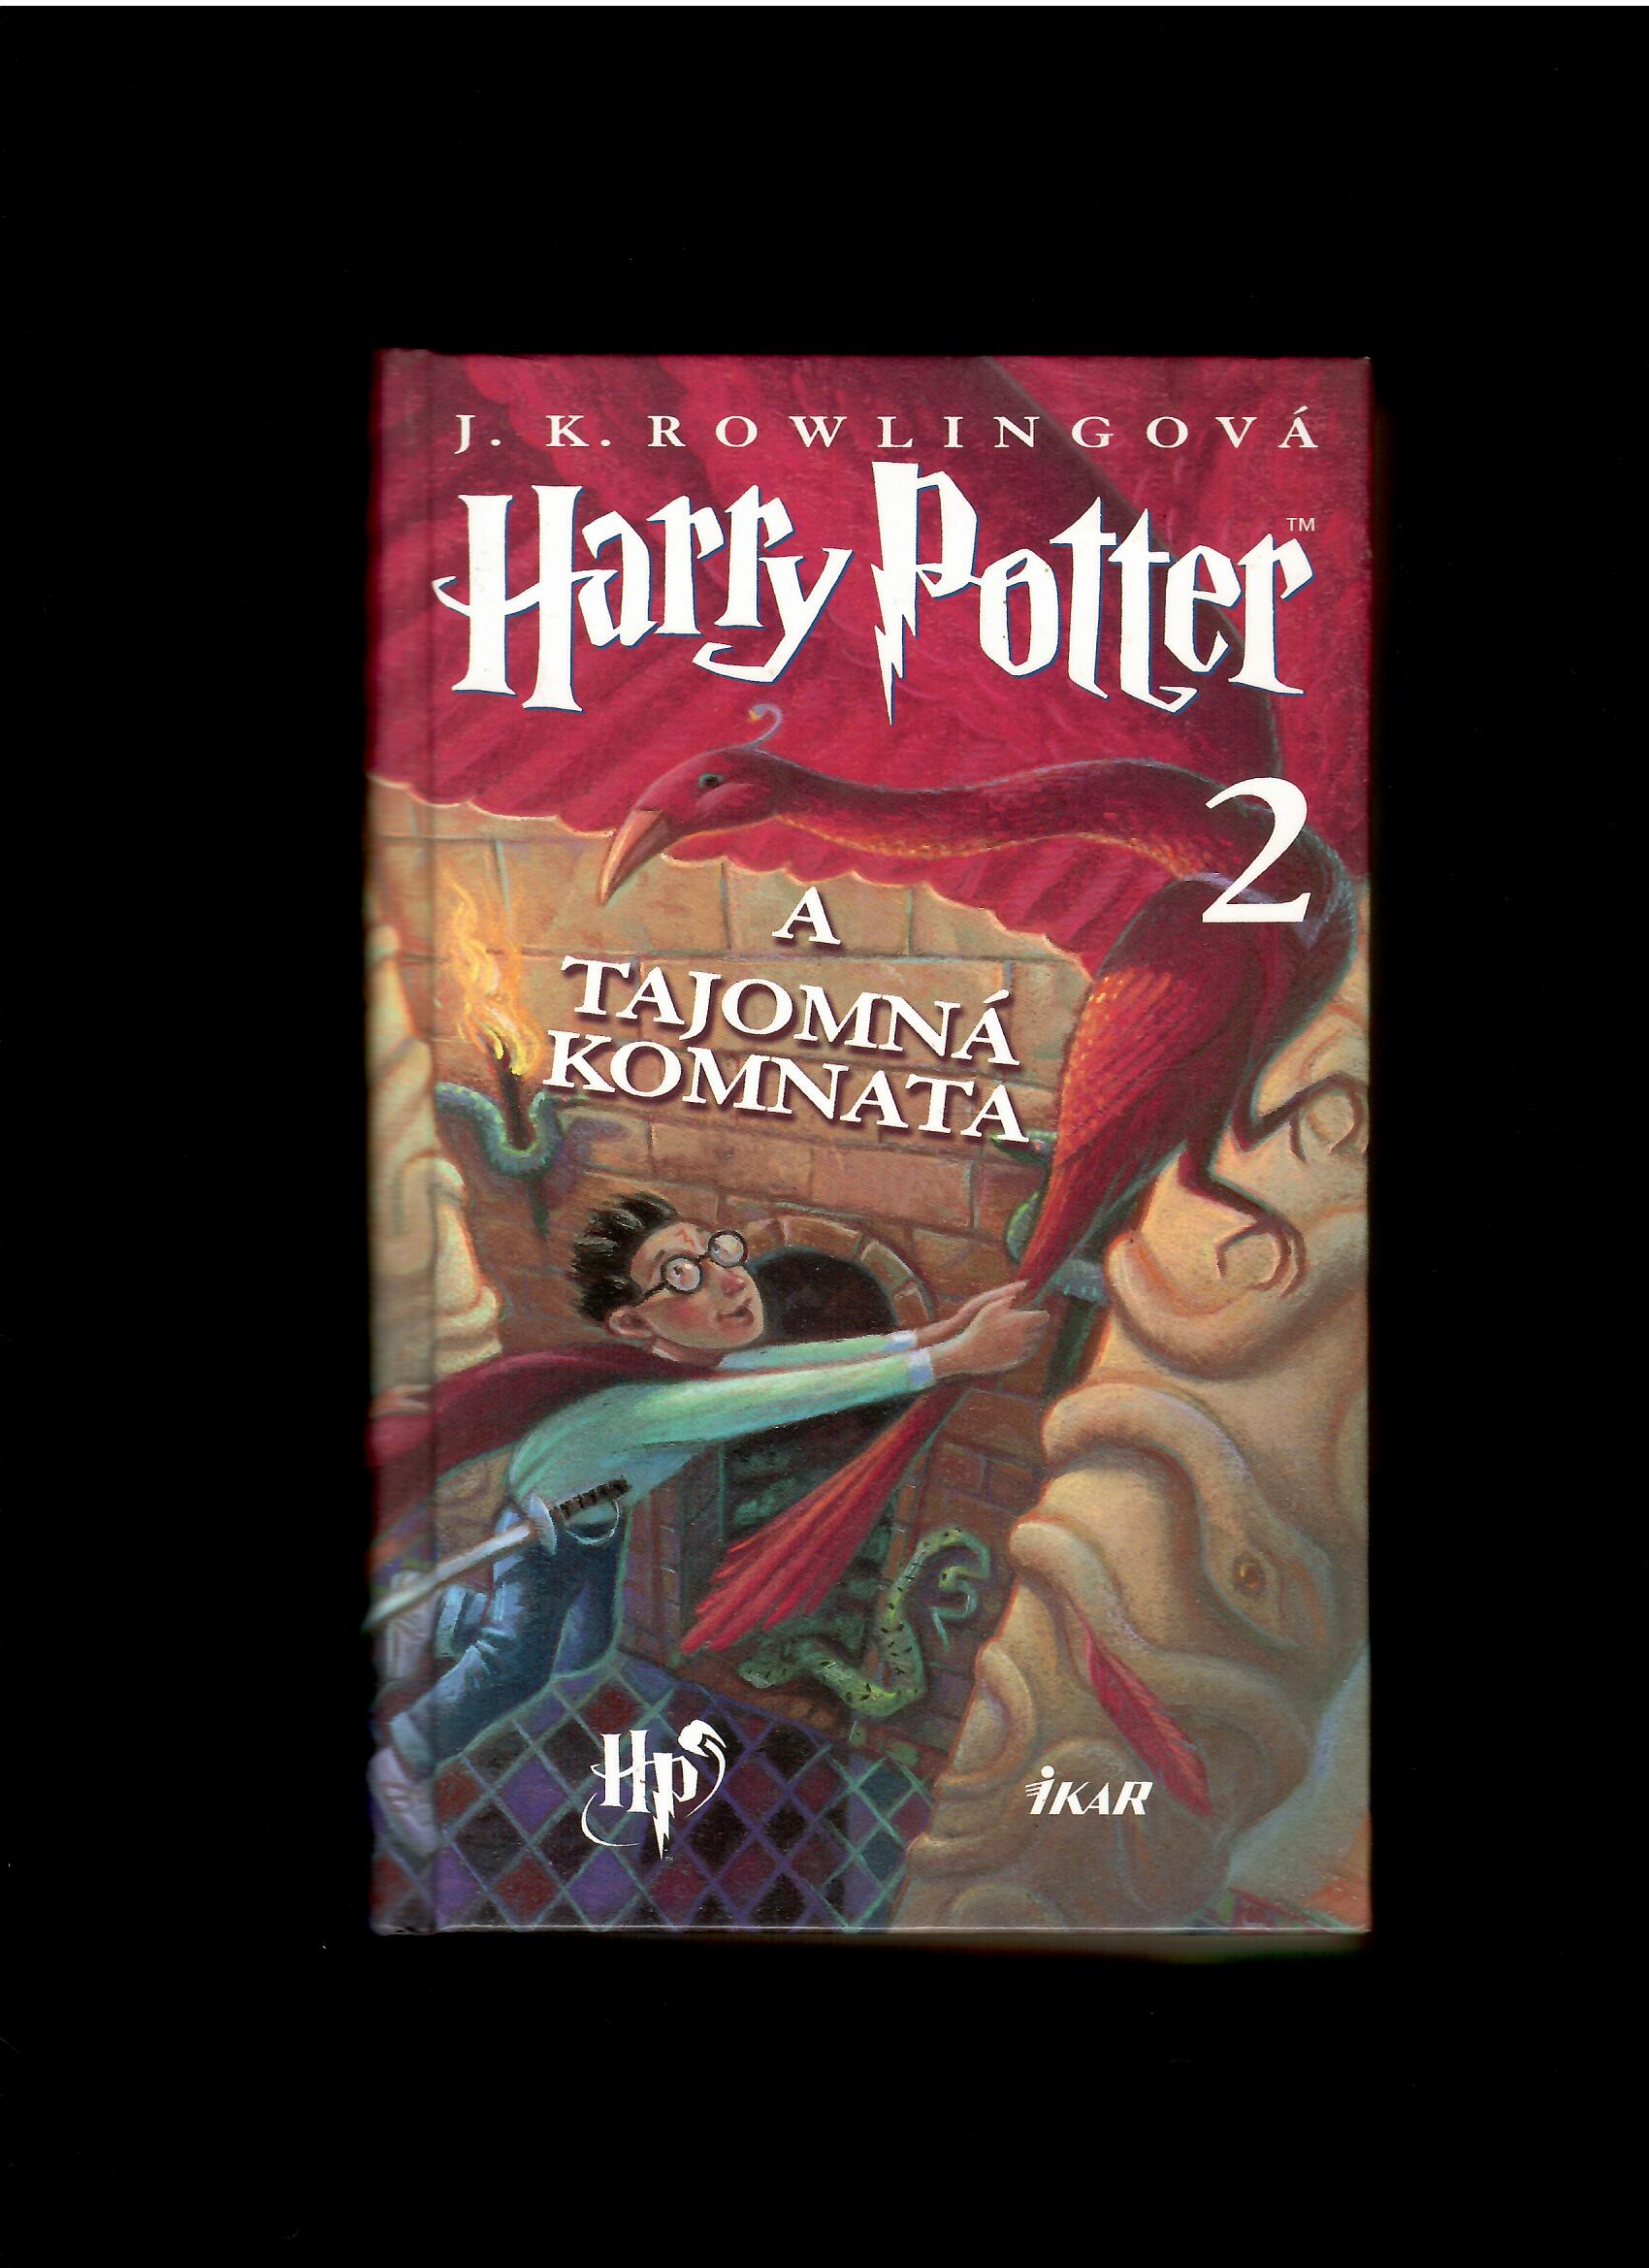 J. K. Rowling: Harry Potter a Tajomná komnata /2001/